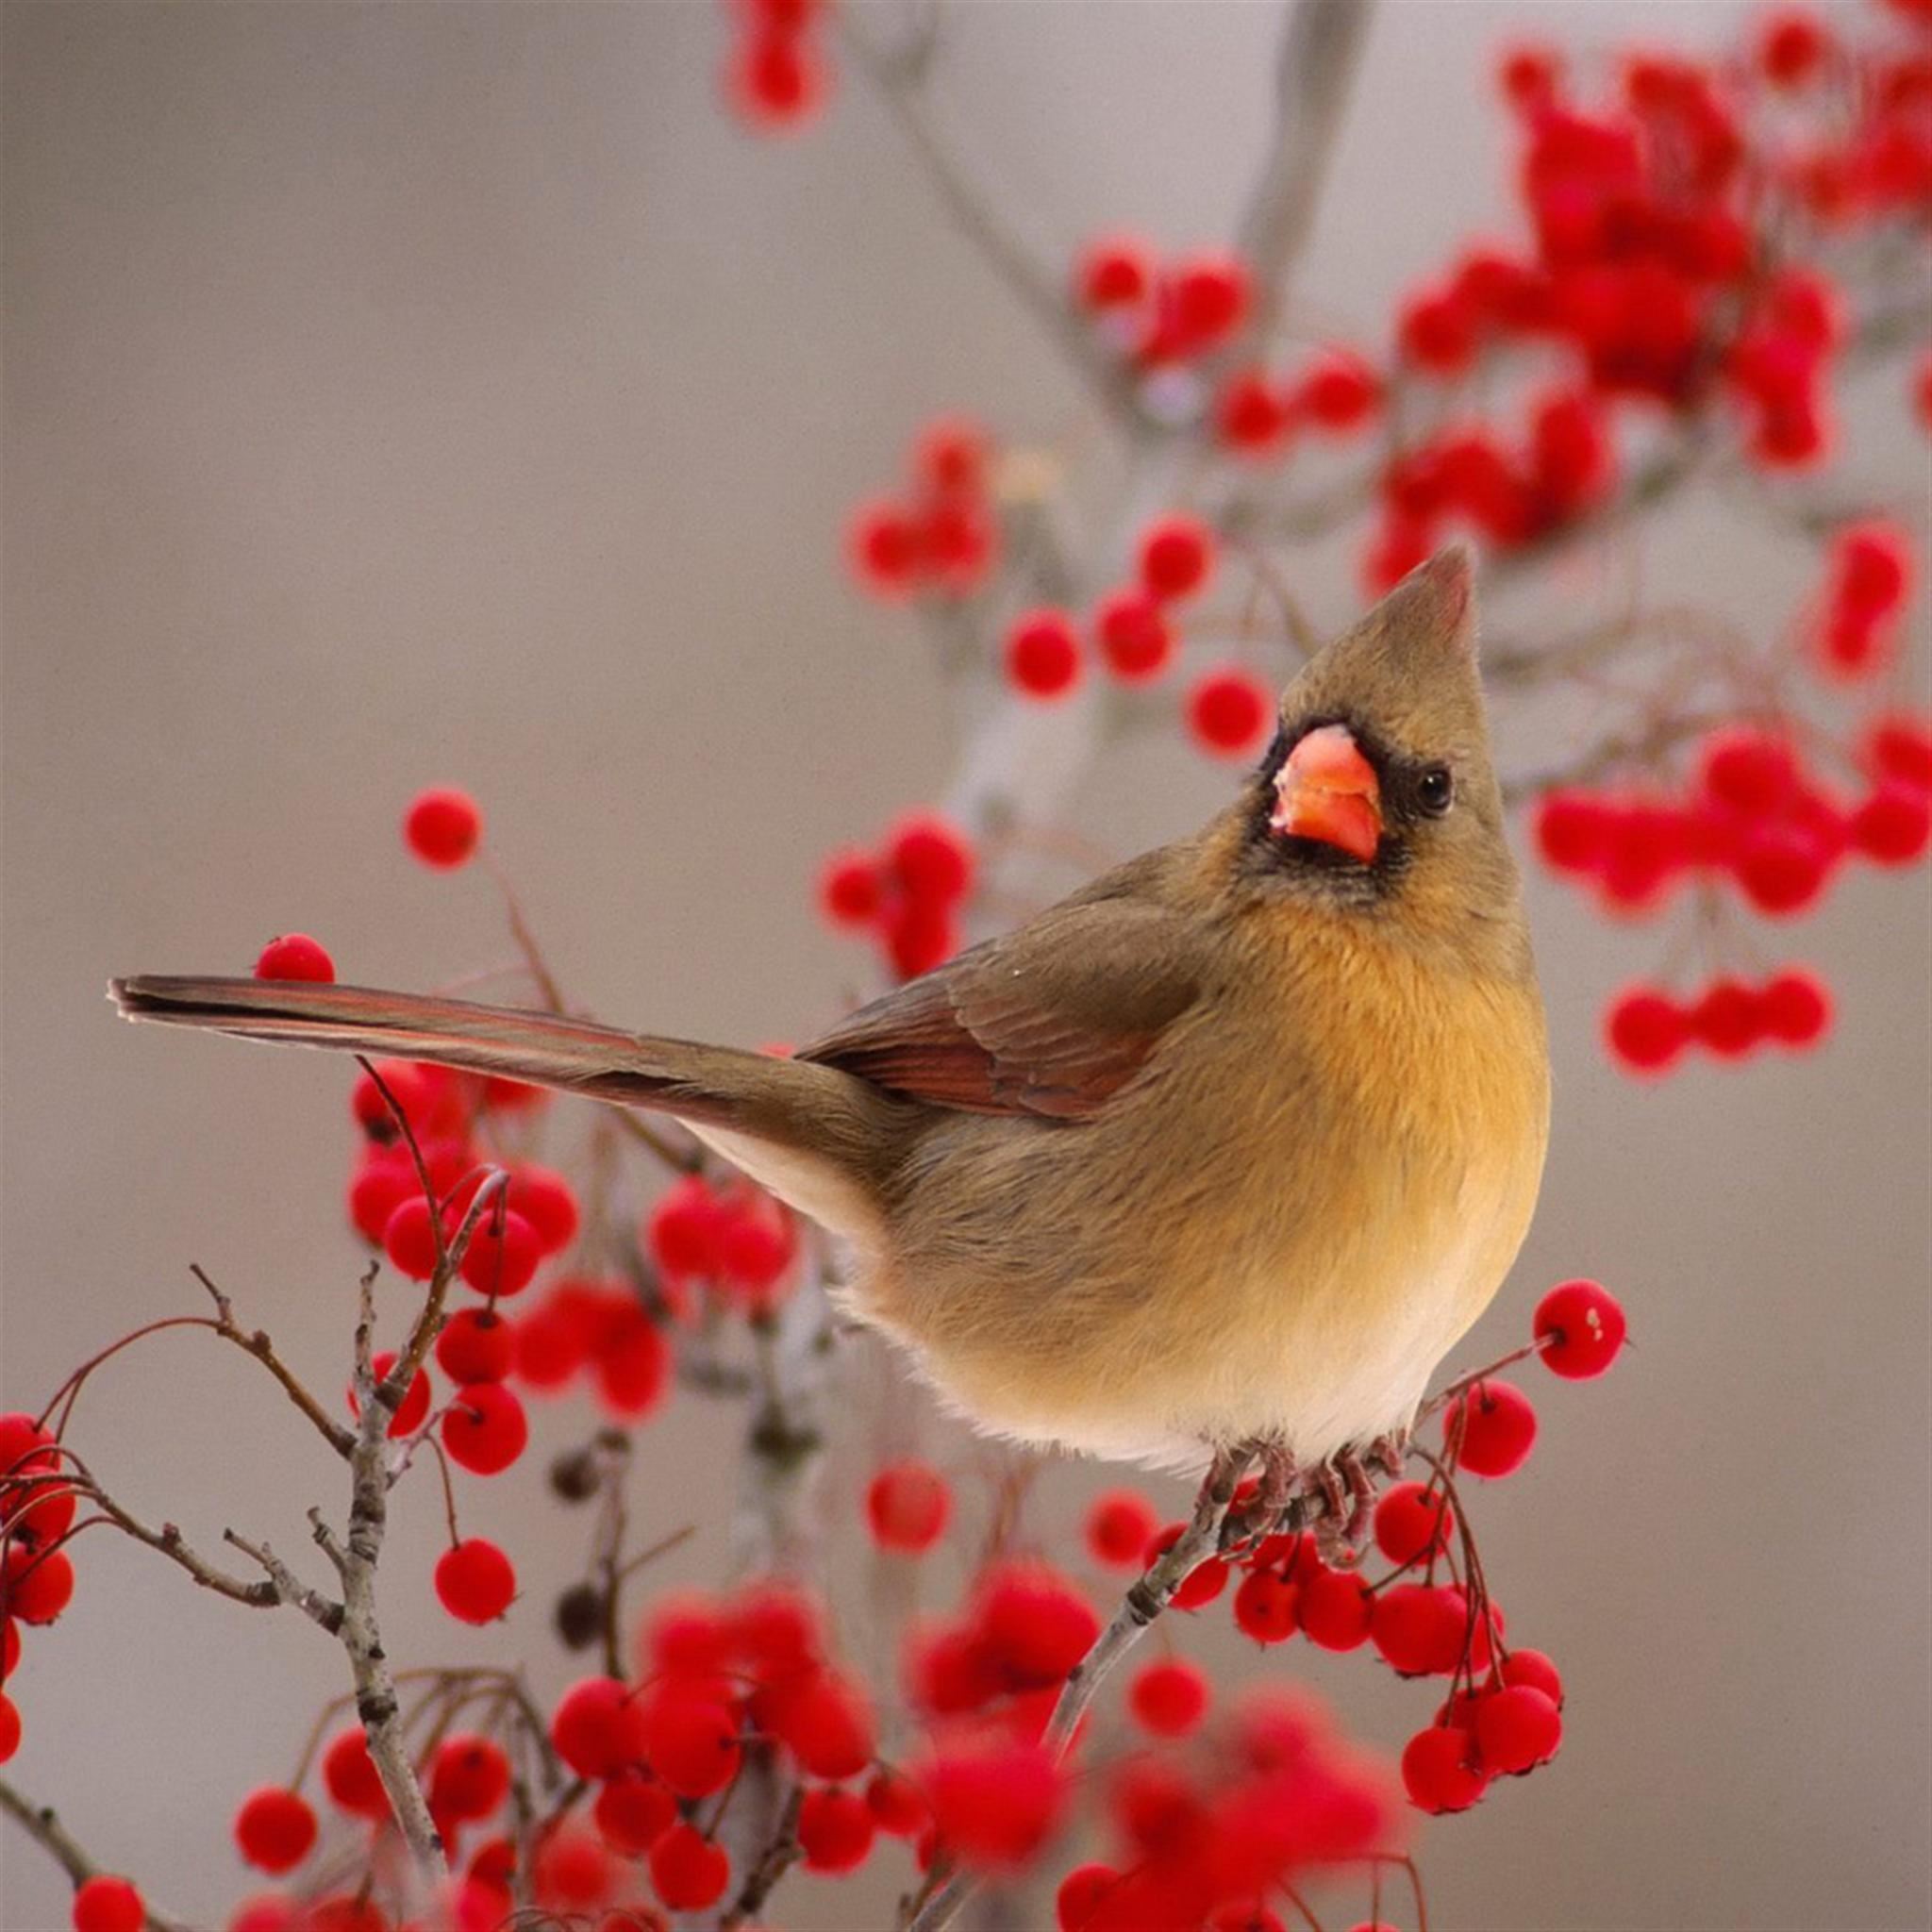 Little Bird On Fruit Branch iPad Air wallpaper 